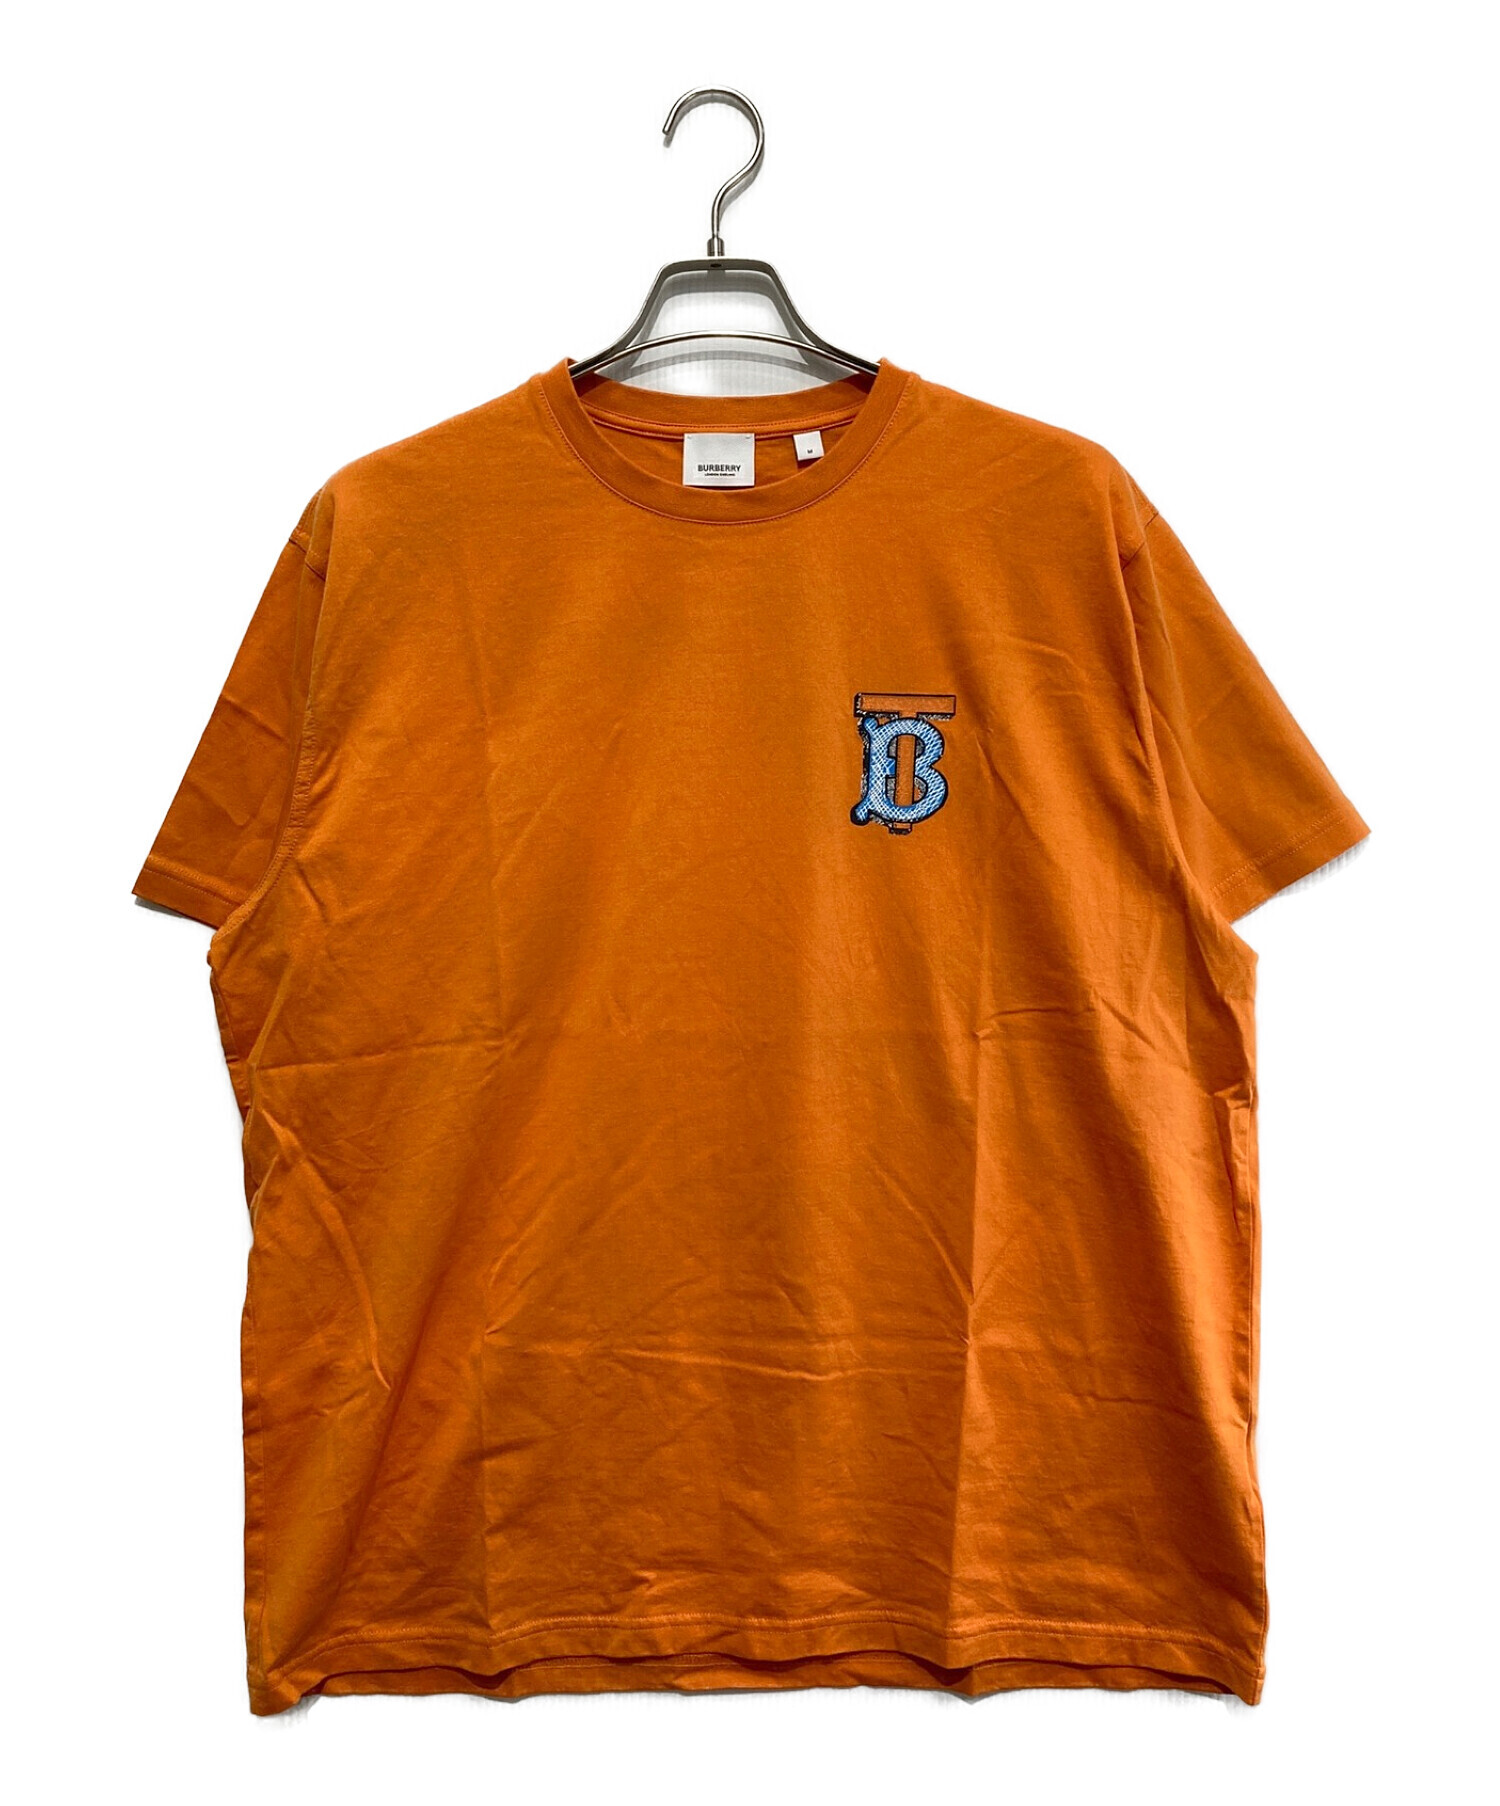 BURBERRY (バーバリー) モノグラムロゴTシャツ オレンジ サイズ:SIZE M